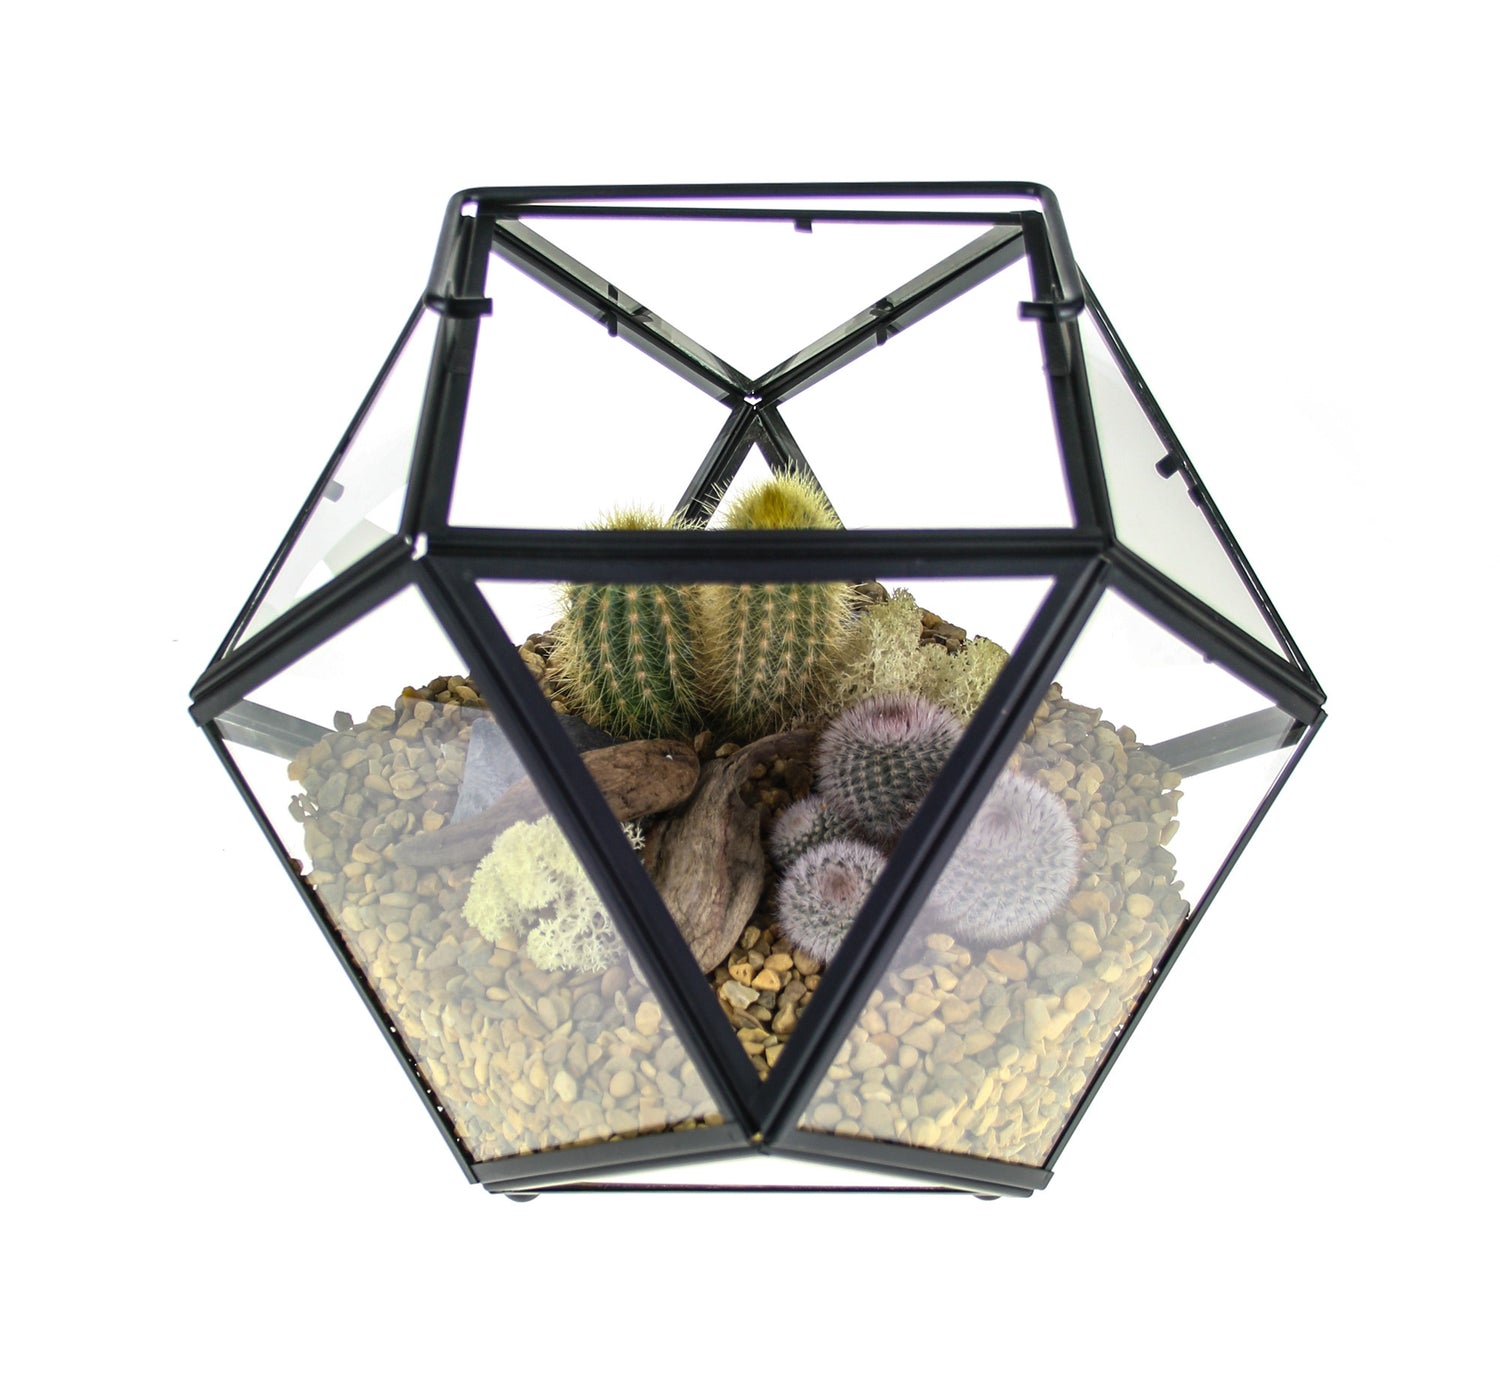 Cactus Terrarium Kit